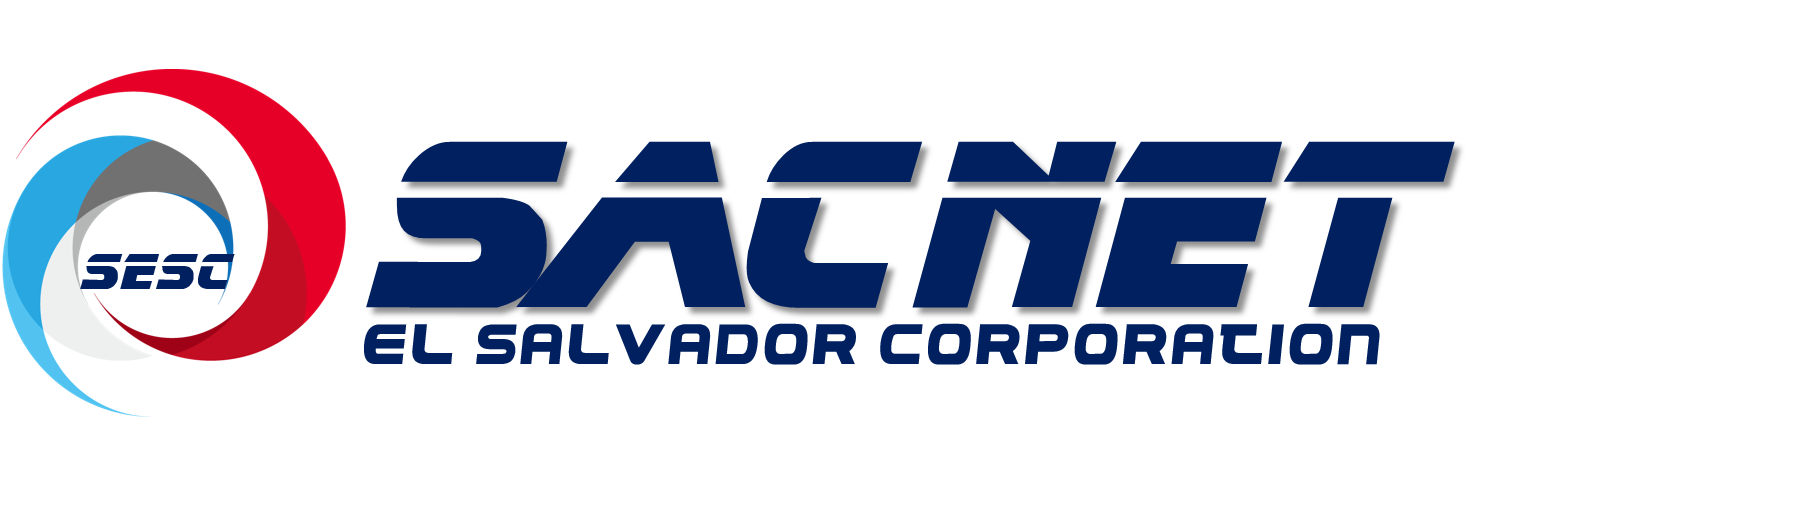 logo SACNET EL SALVADOR CORP - 